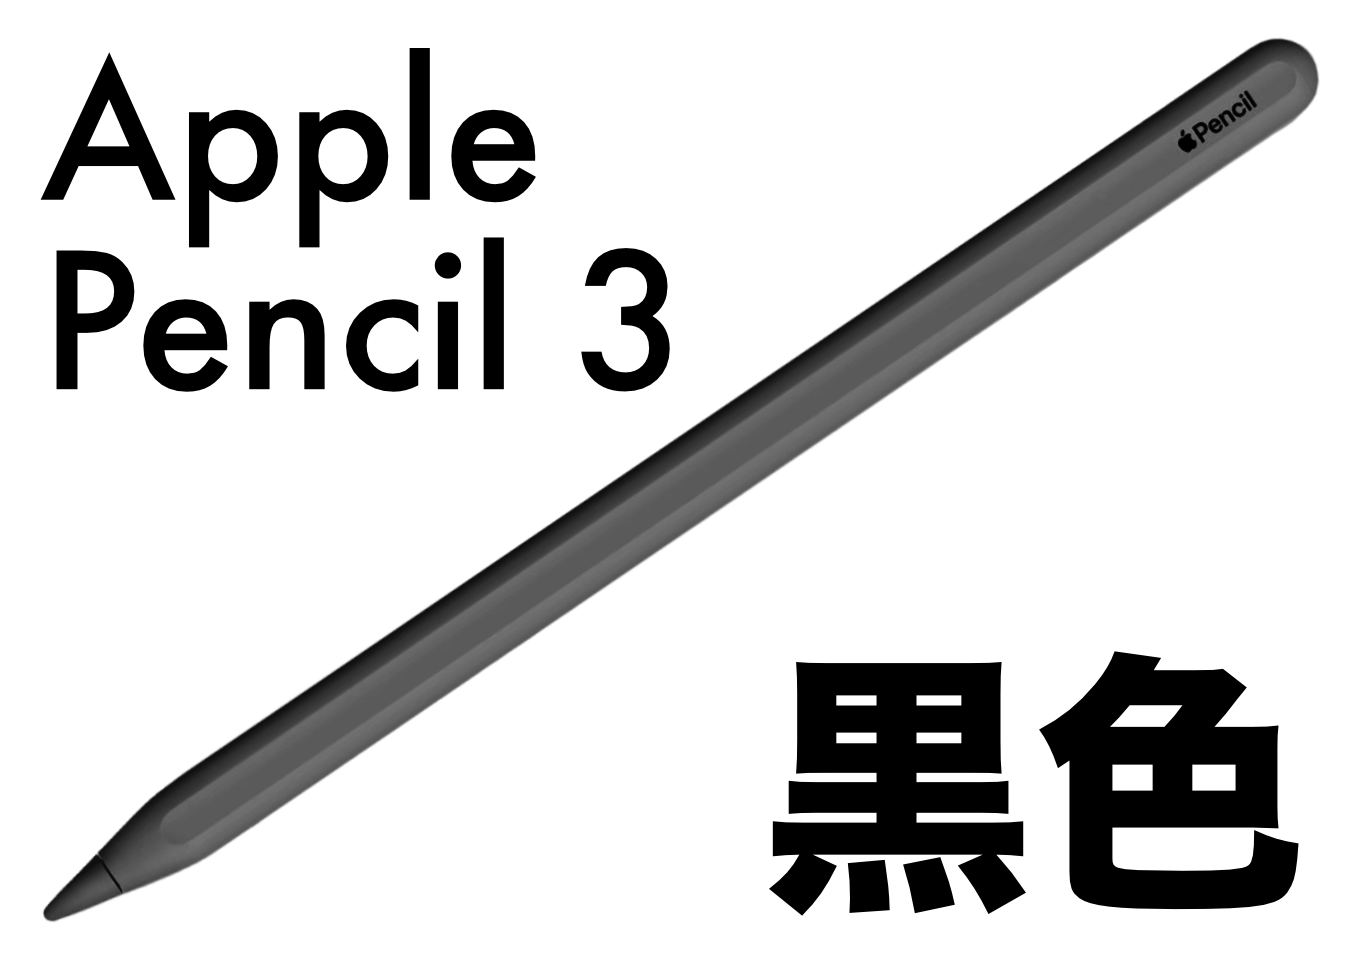 Applepencil3